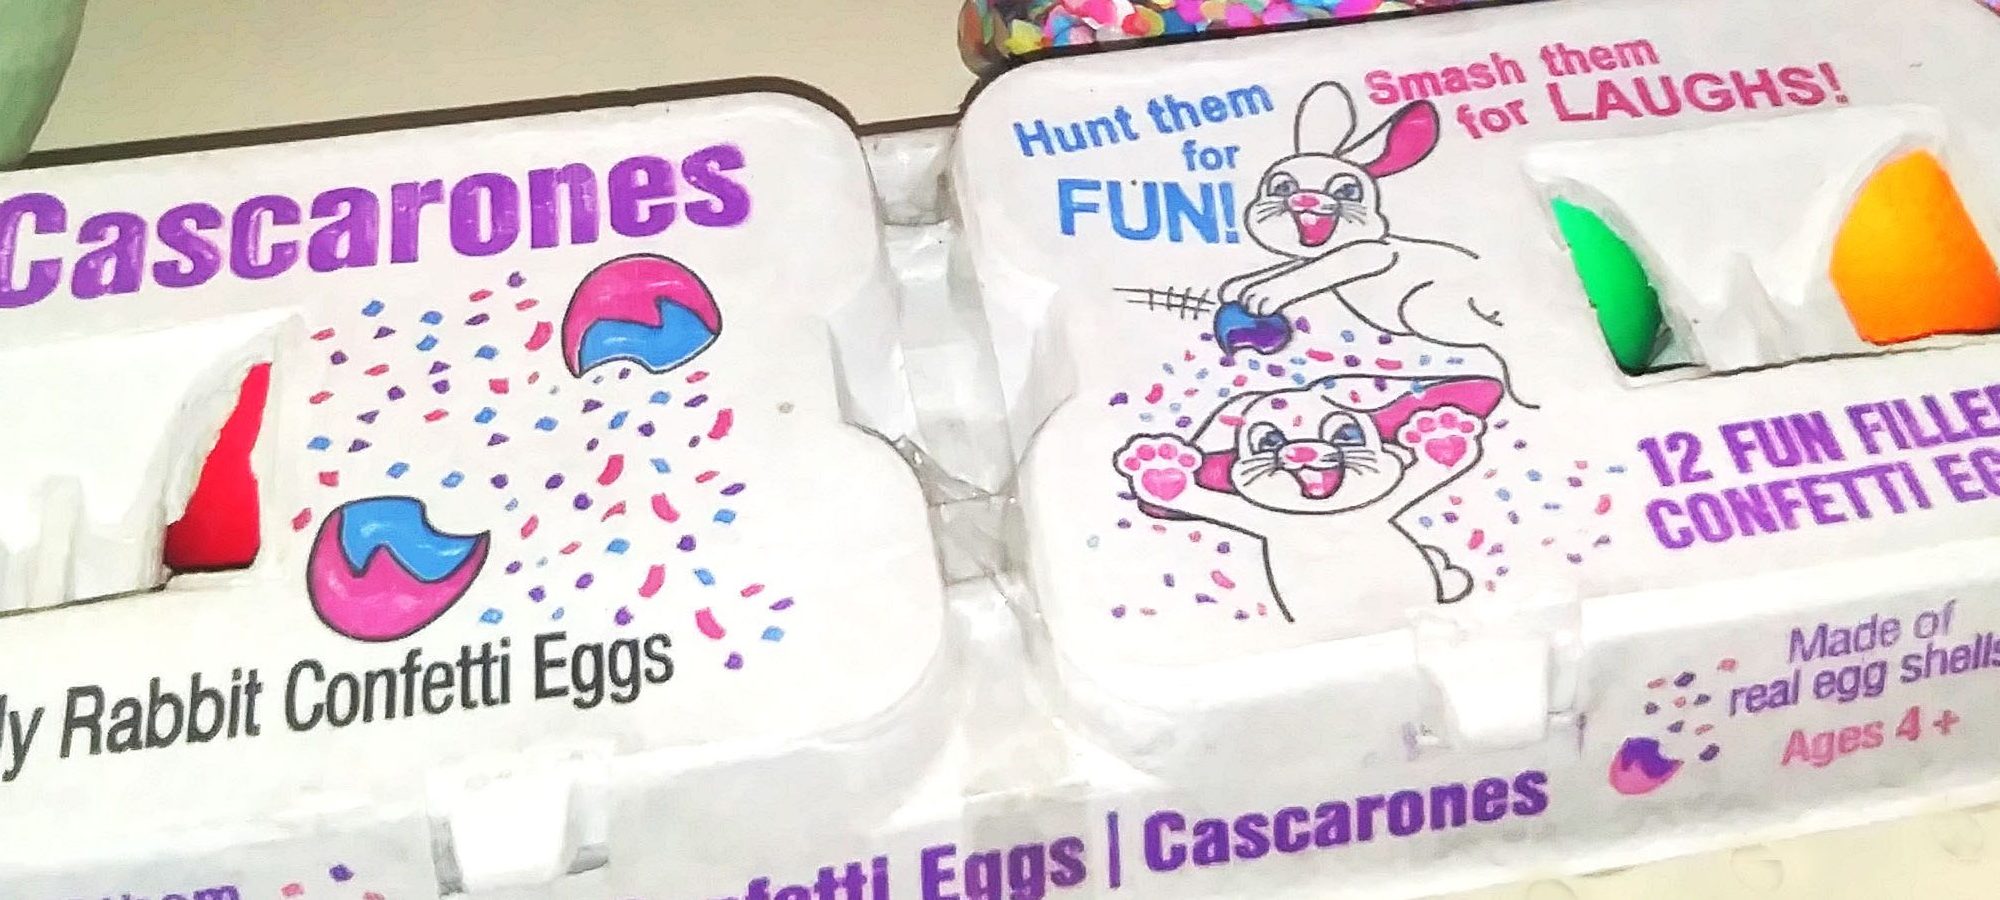 egg-carton-with-confetti-eggs